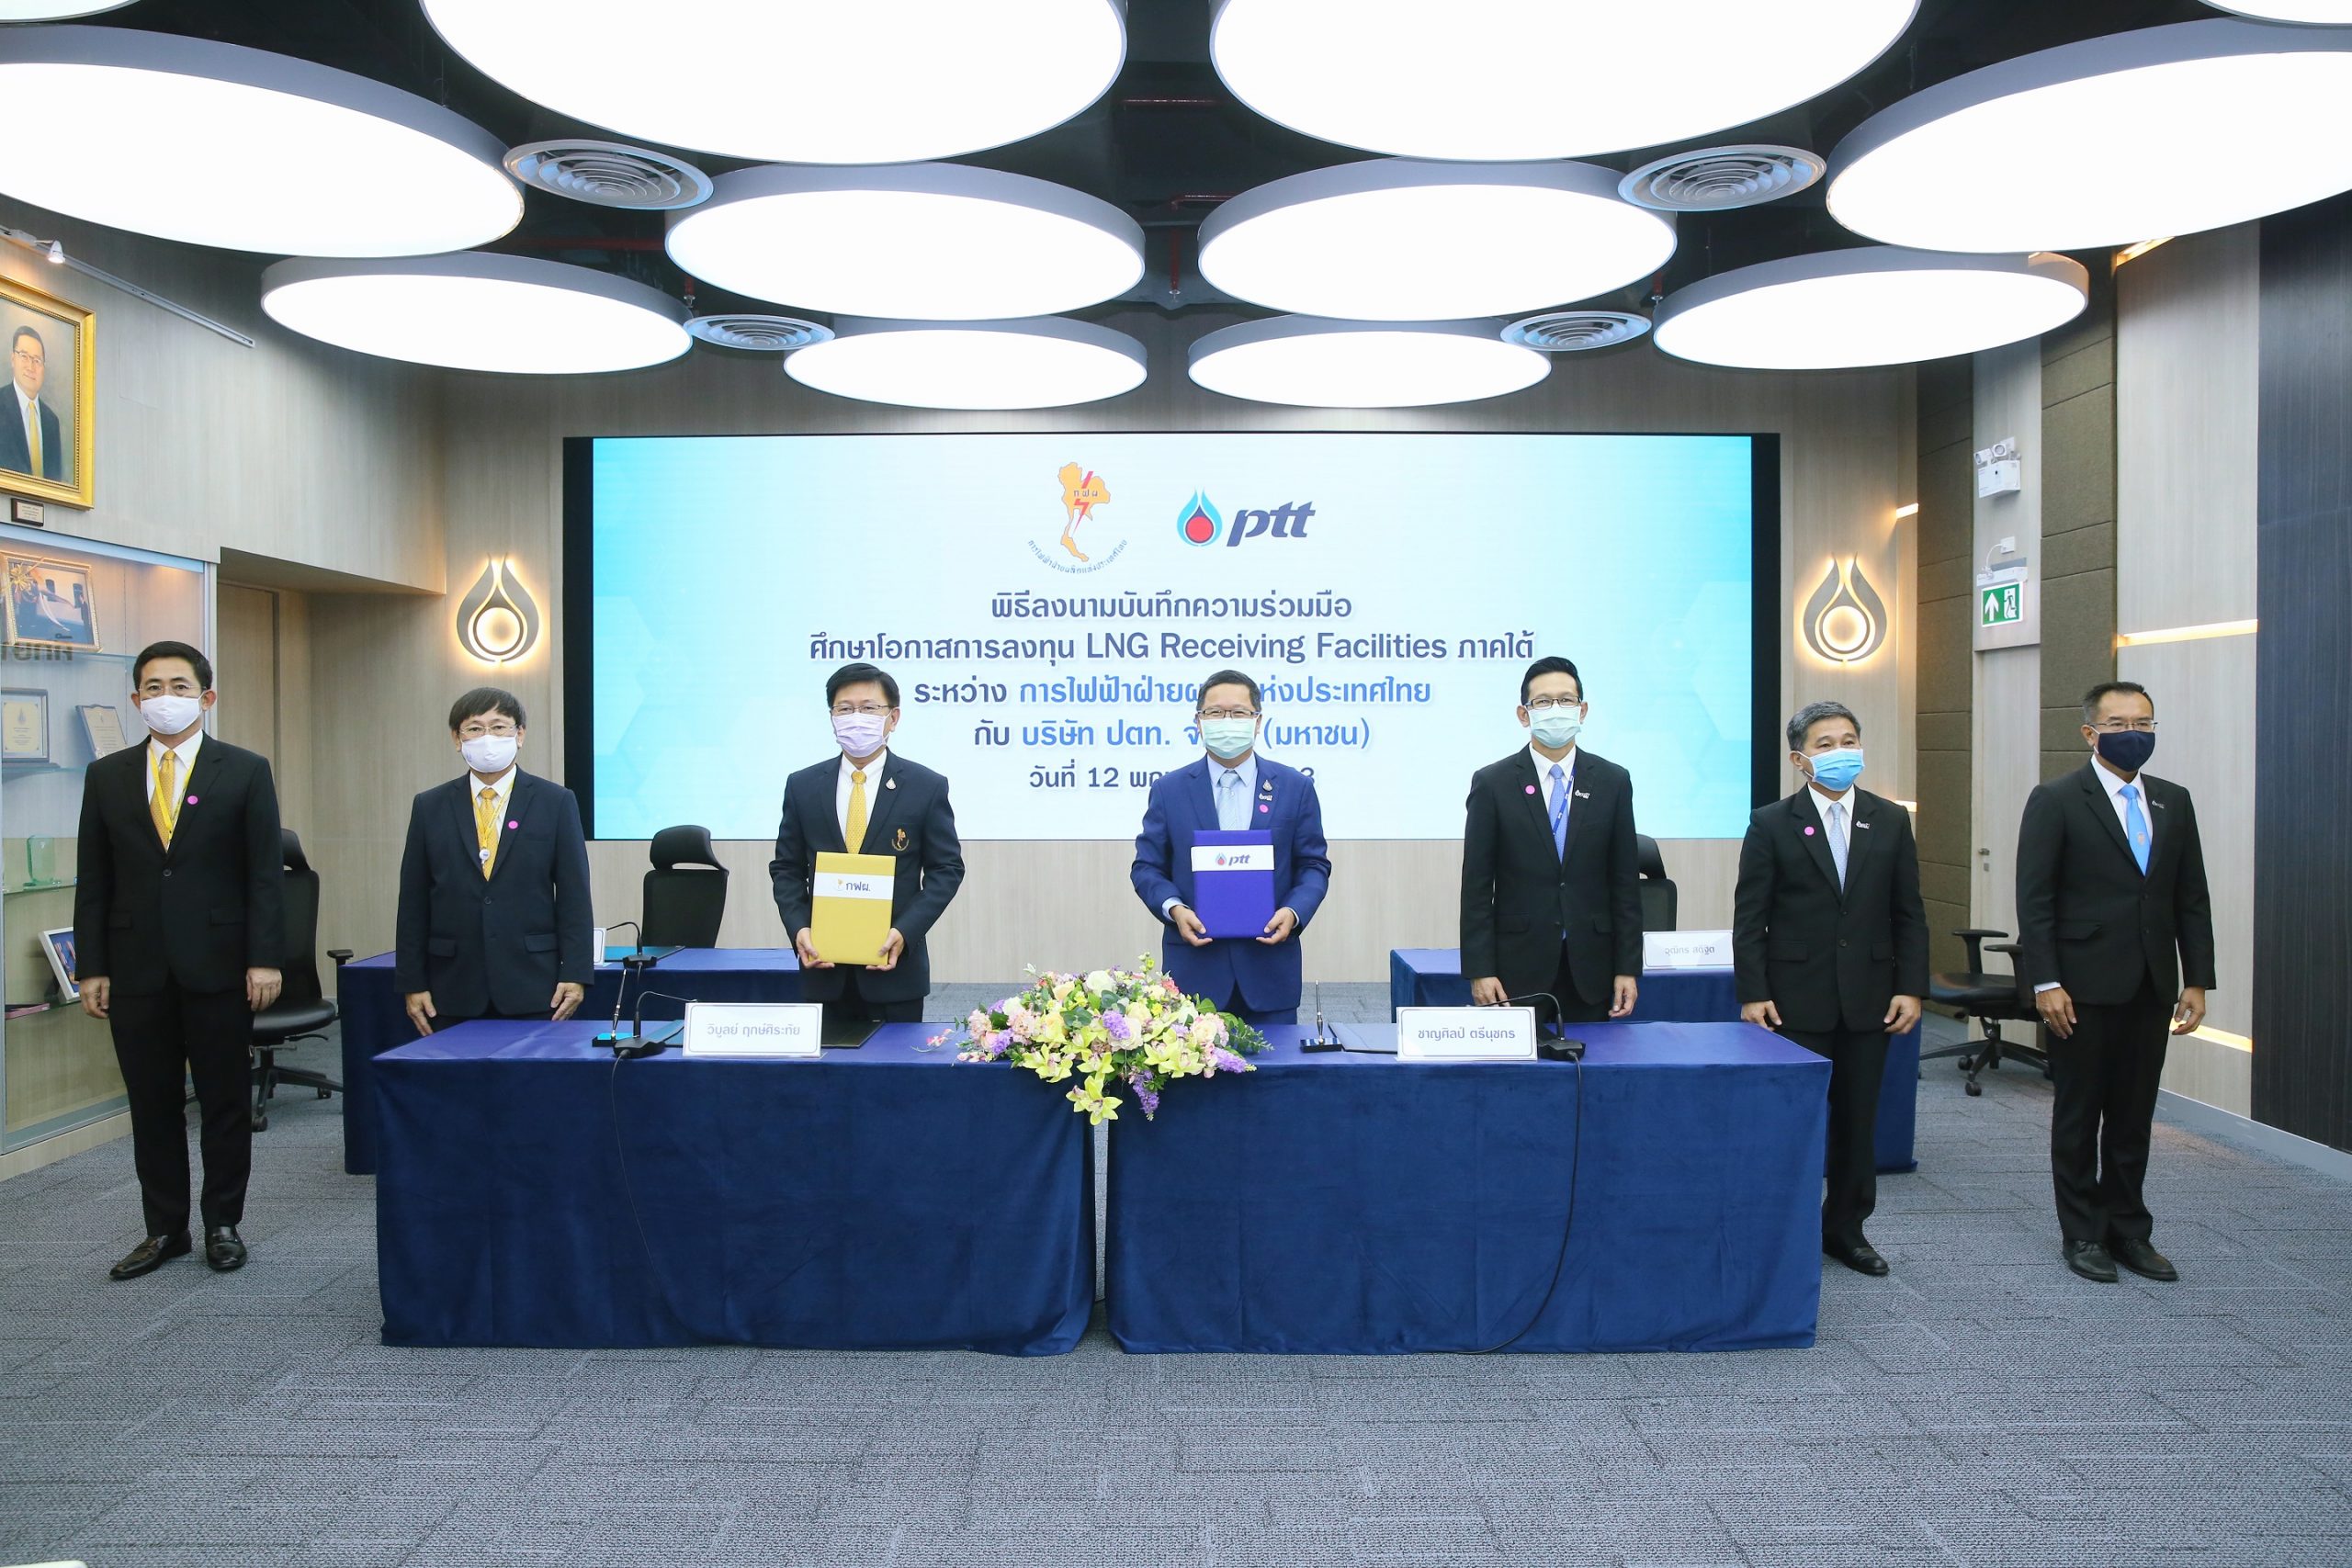 ปตท. จับมือ กฟผ. ร่วมศึกษาและพัฒนาโครงการ LNG Receiving Facilities ภาคใต้ เพื่อความมั่นคงทางพลังงานไทย